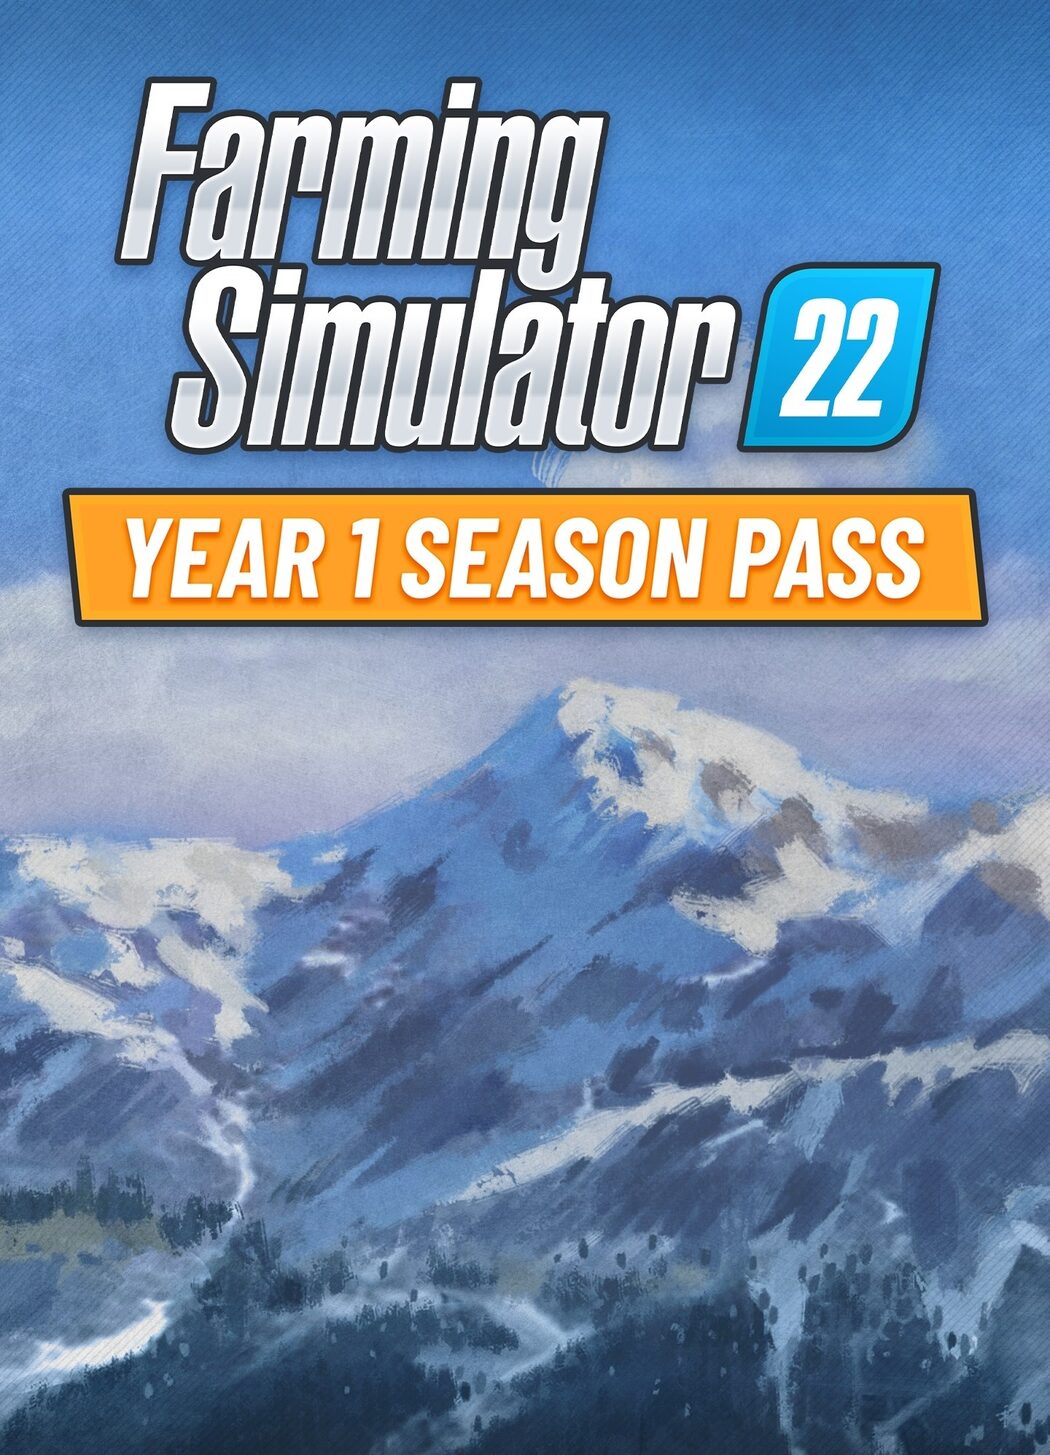 Buy Farming Simulator 22 (PC) - Steam Gift - EUROPE - Cheap - !